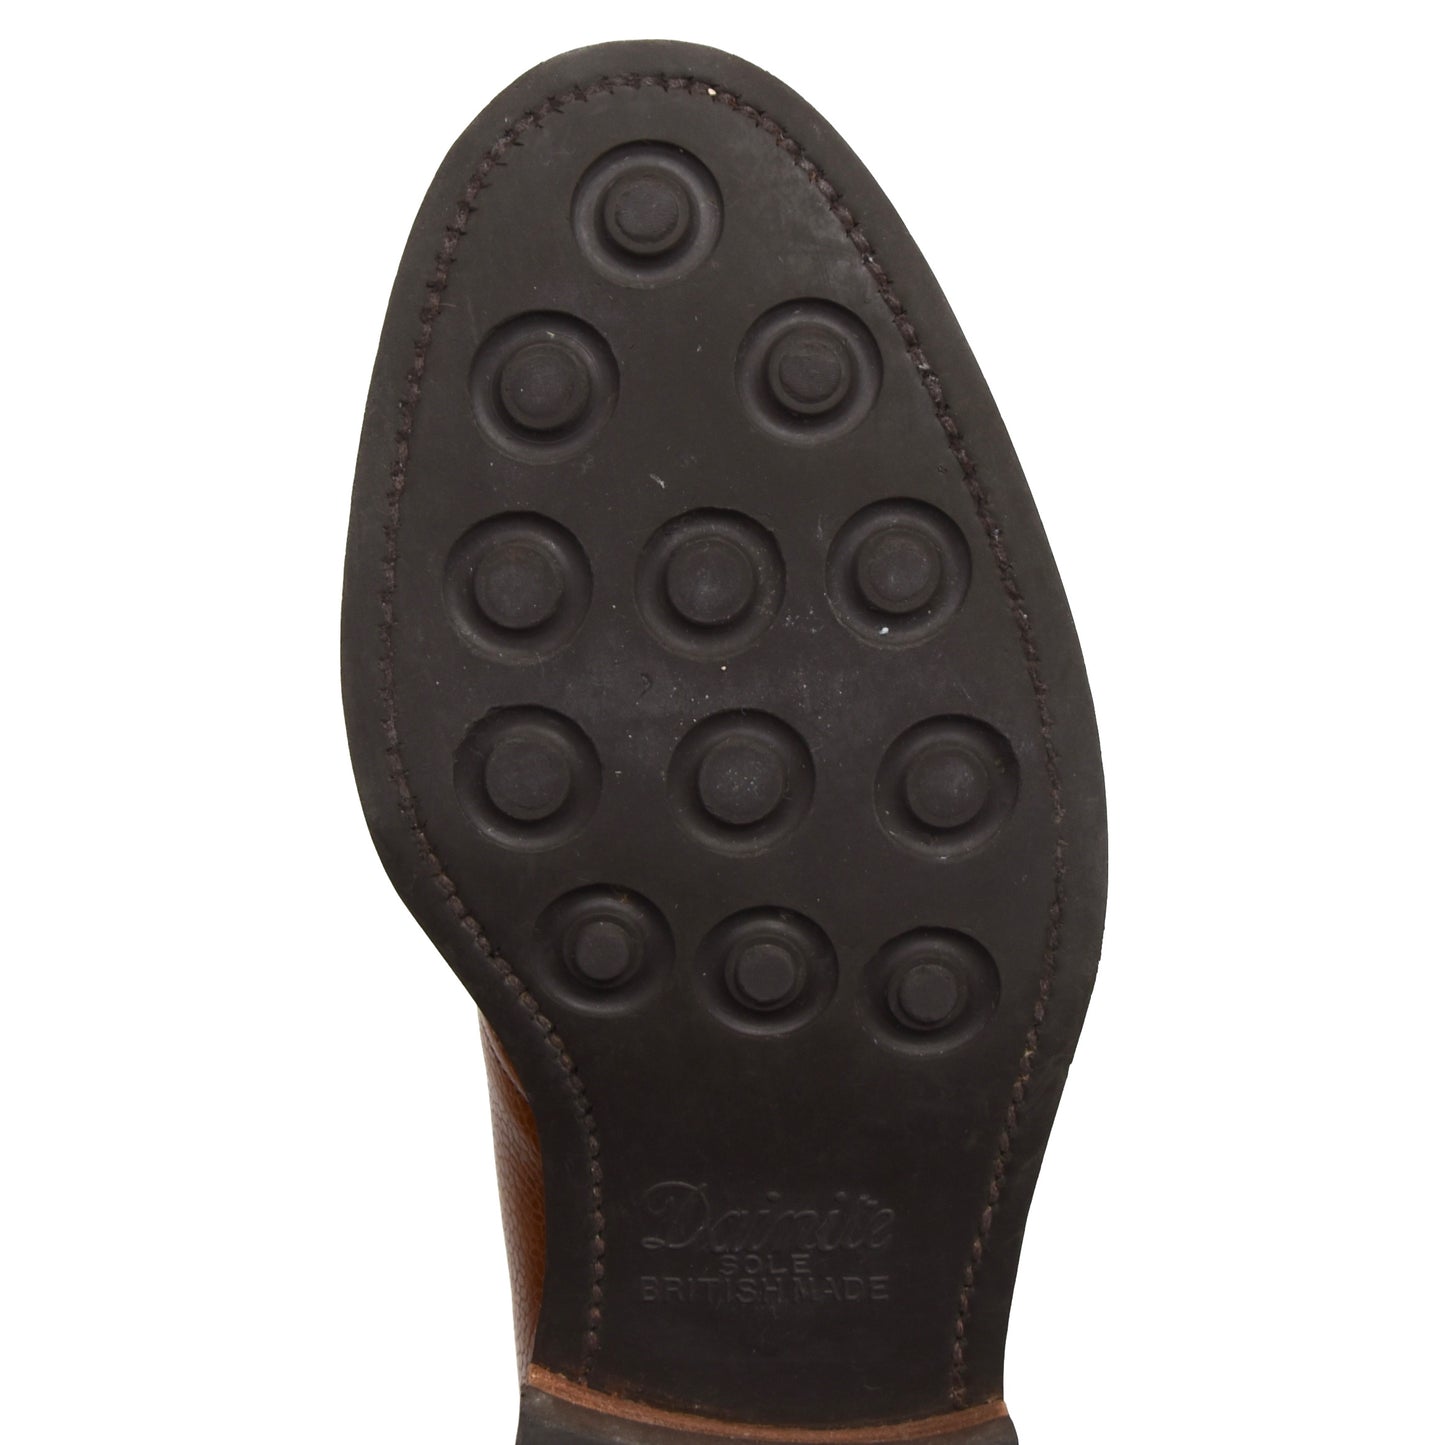 Crockett &amp; Jones Chepstow Stiefel Größe 8E - Cognac/Tan